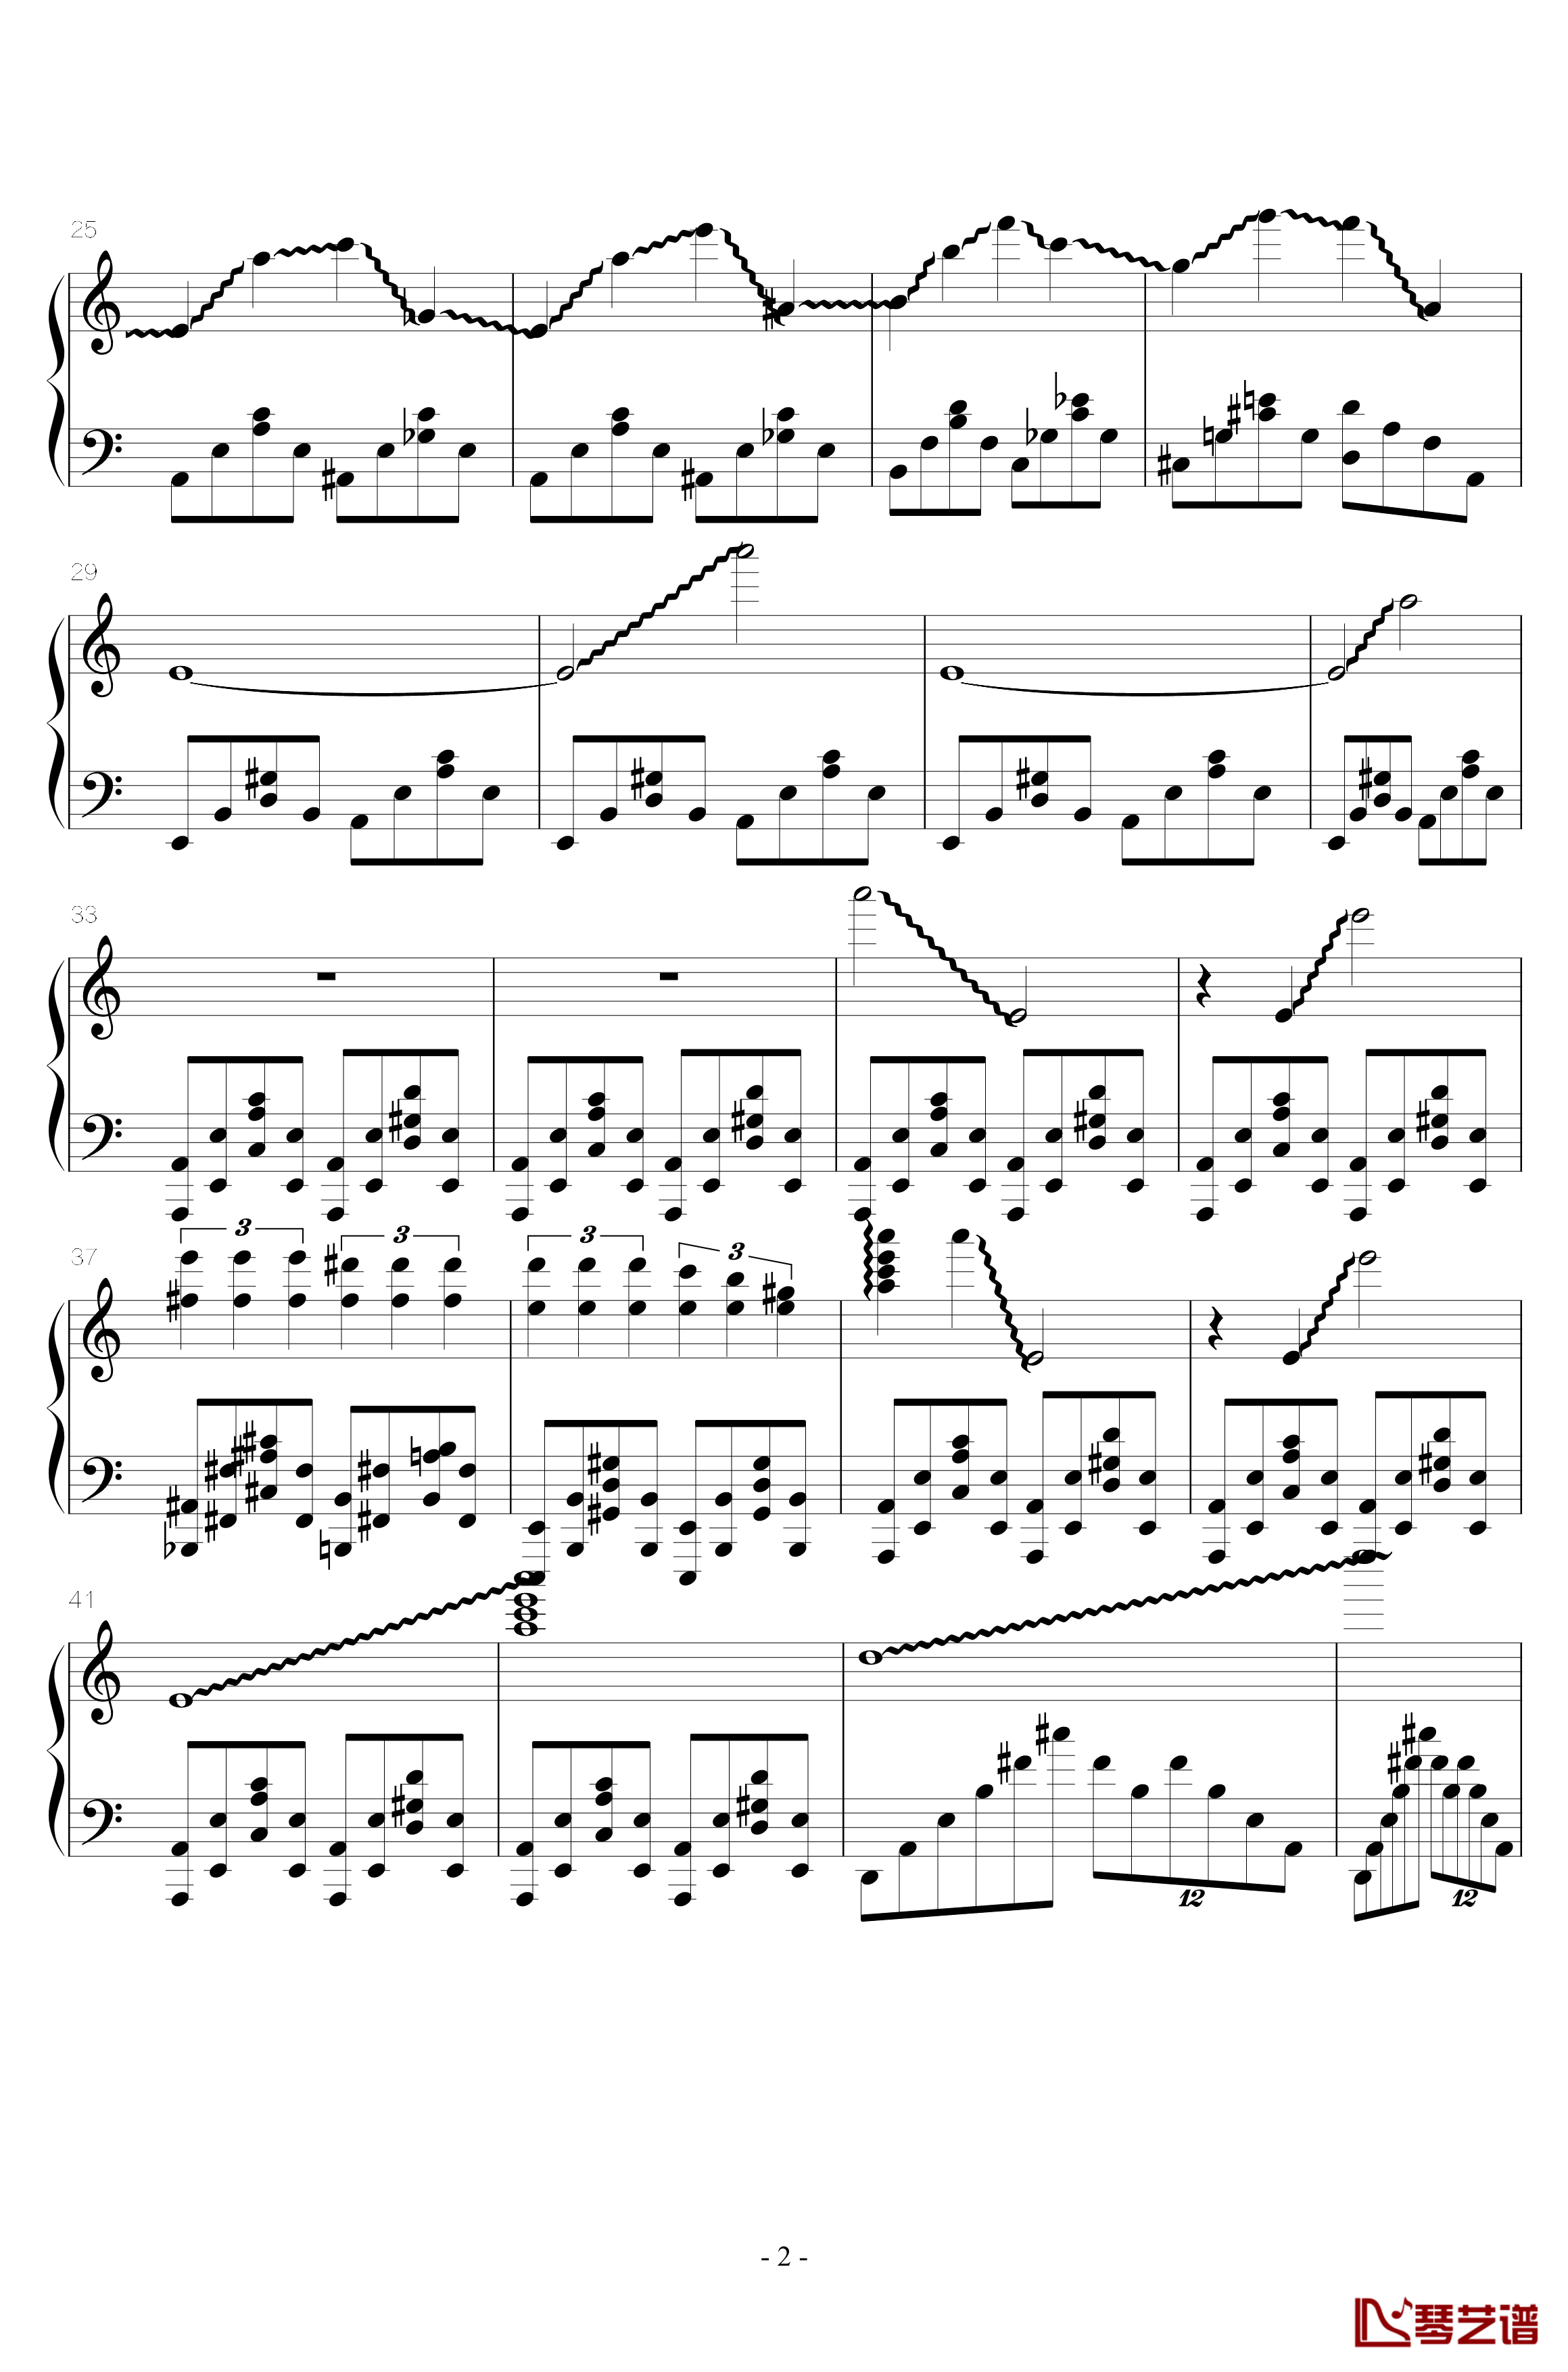 火星练习曲钢琴谱-Op.2 No.62